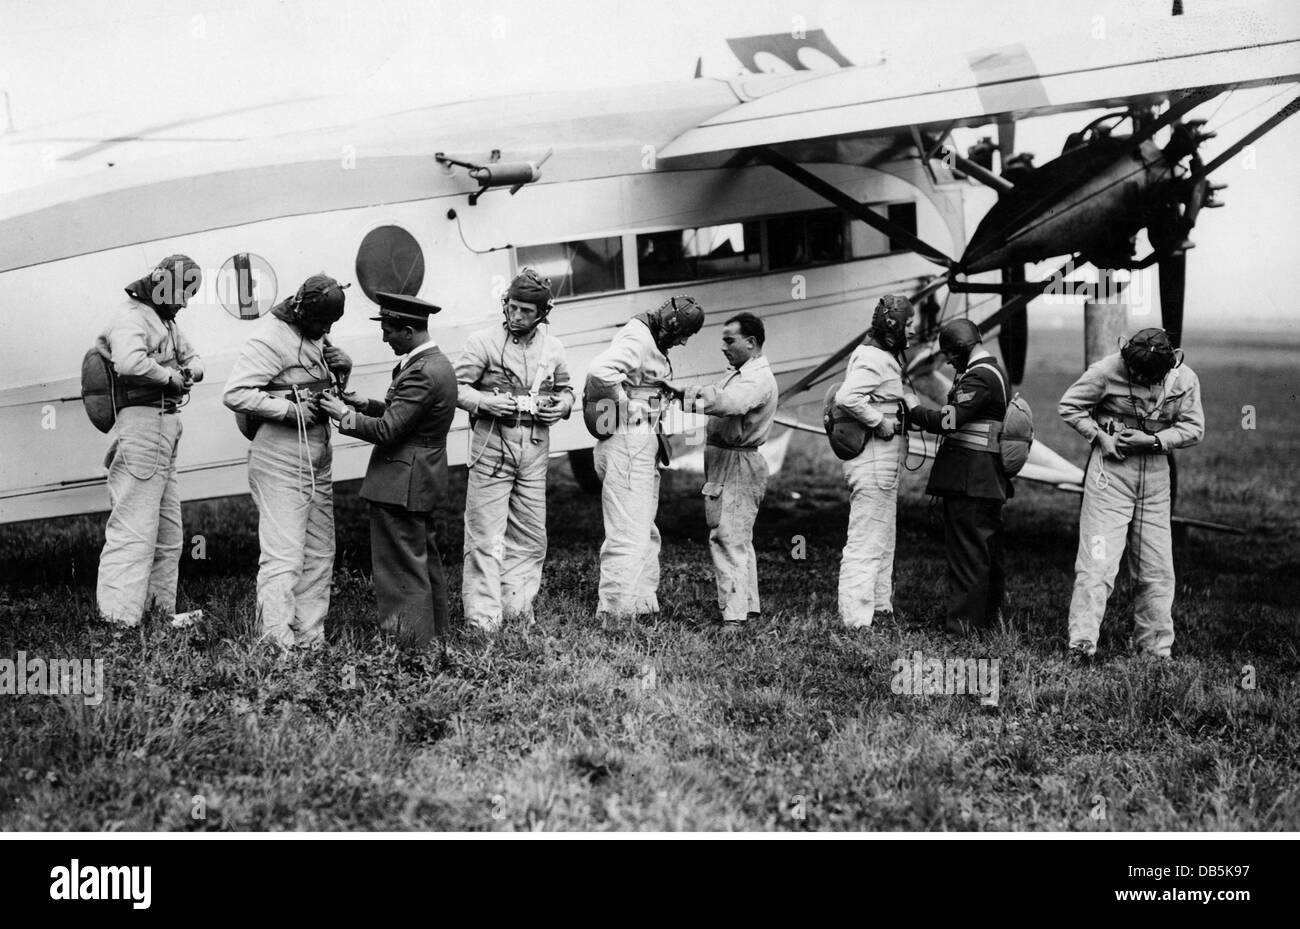 Militär, Italien, Luftwaffe, Flugschule der Regia Aeronautica, Funker, die sich auf einen Flug vorbereiten, 1930er Jahre, Zusatzrechte-Abfertigung-nicht verfügbar Stockfoto